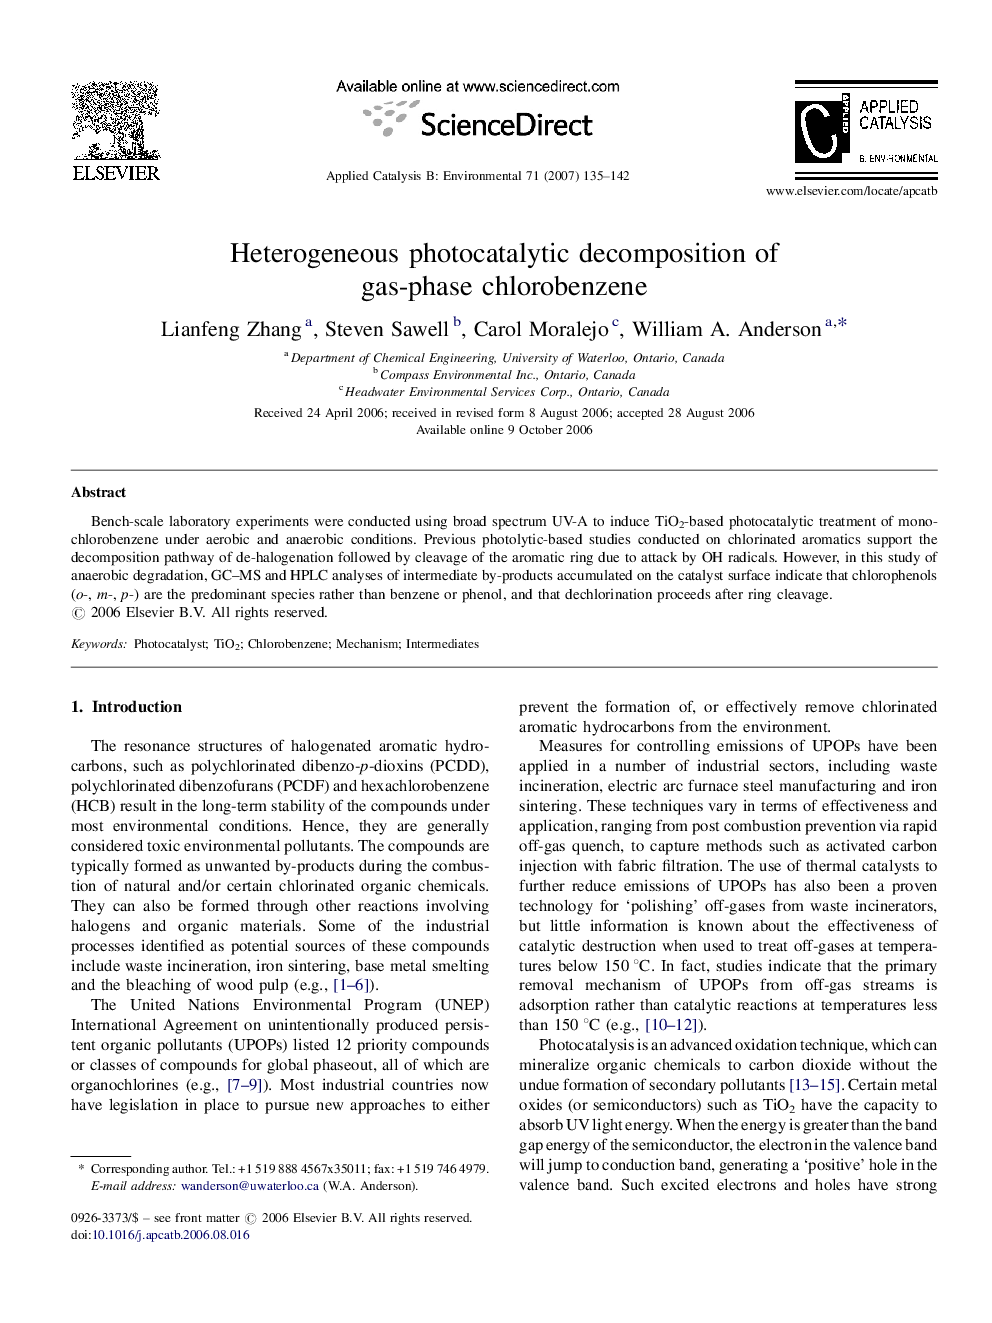 Heterogeneous photocatalytic decomposition of gas-phase chlorobenzene